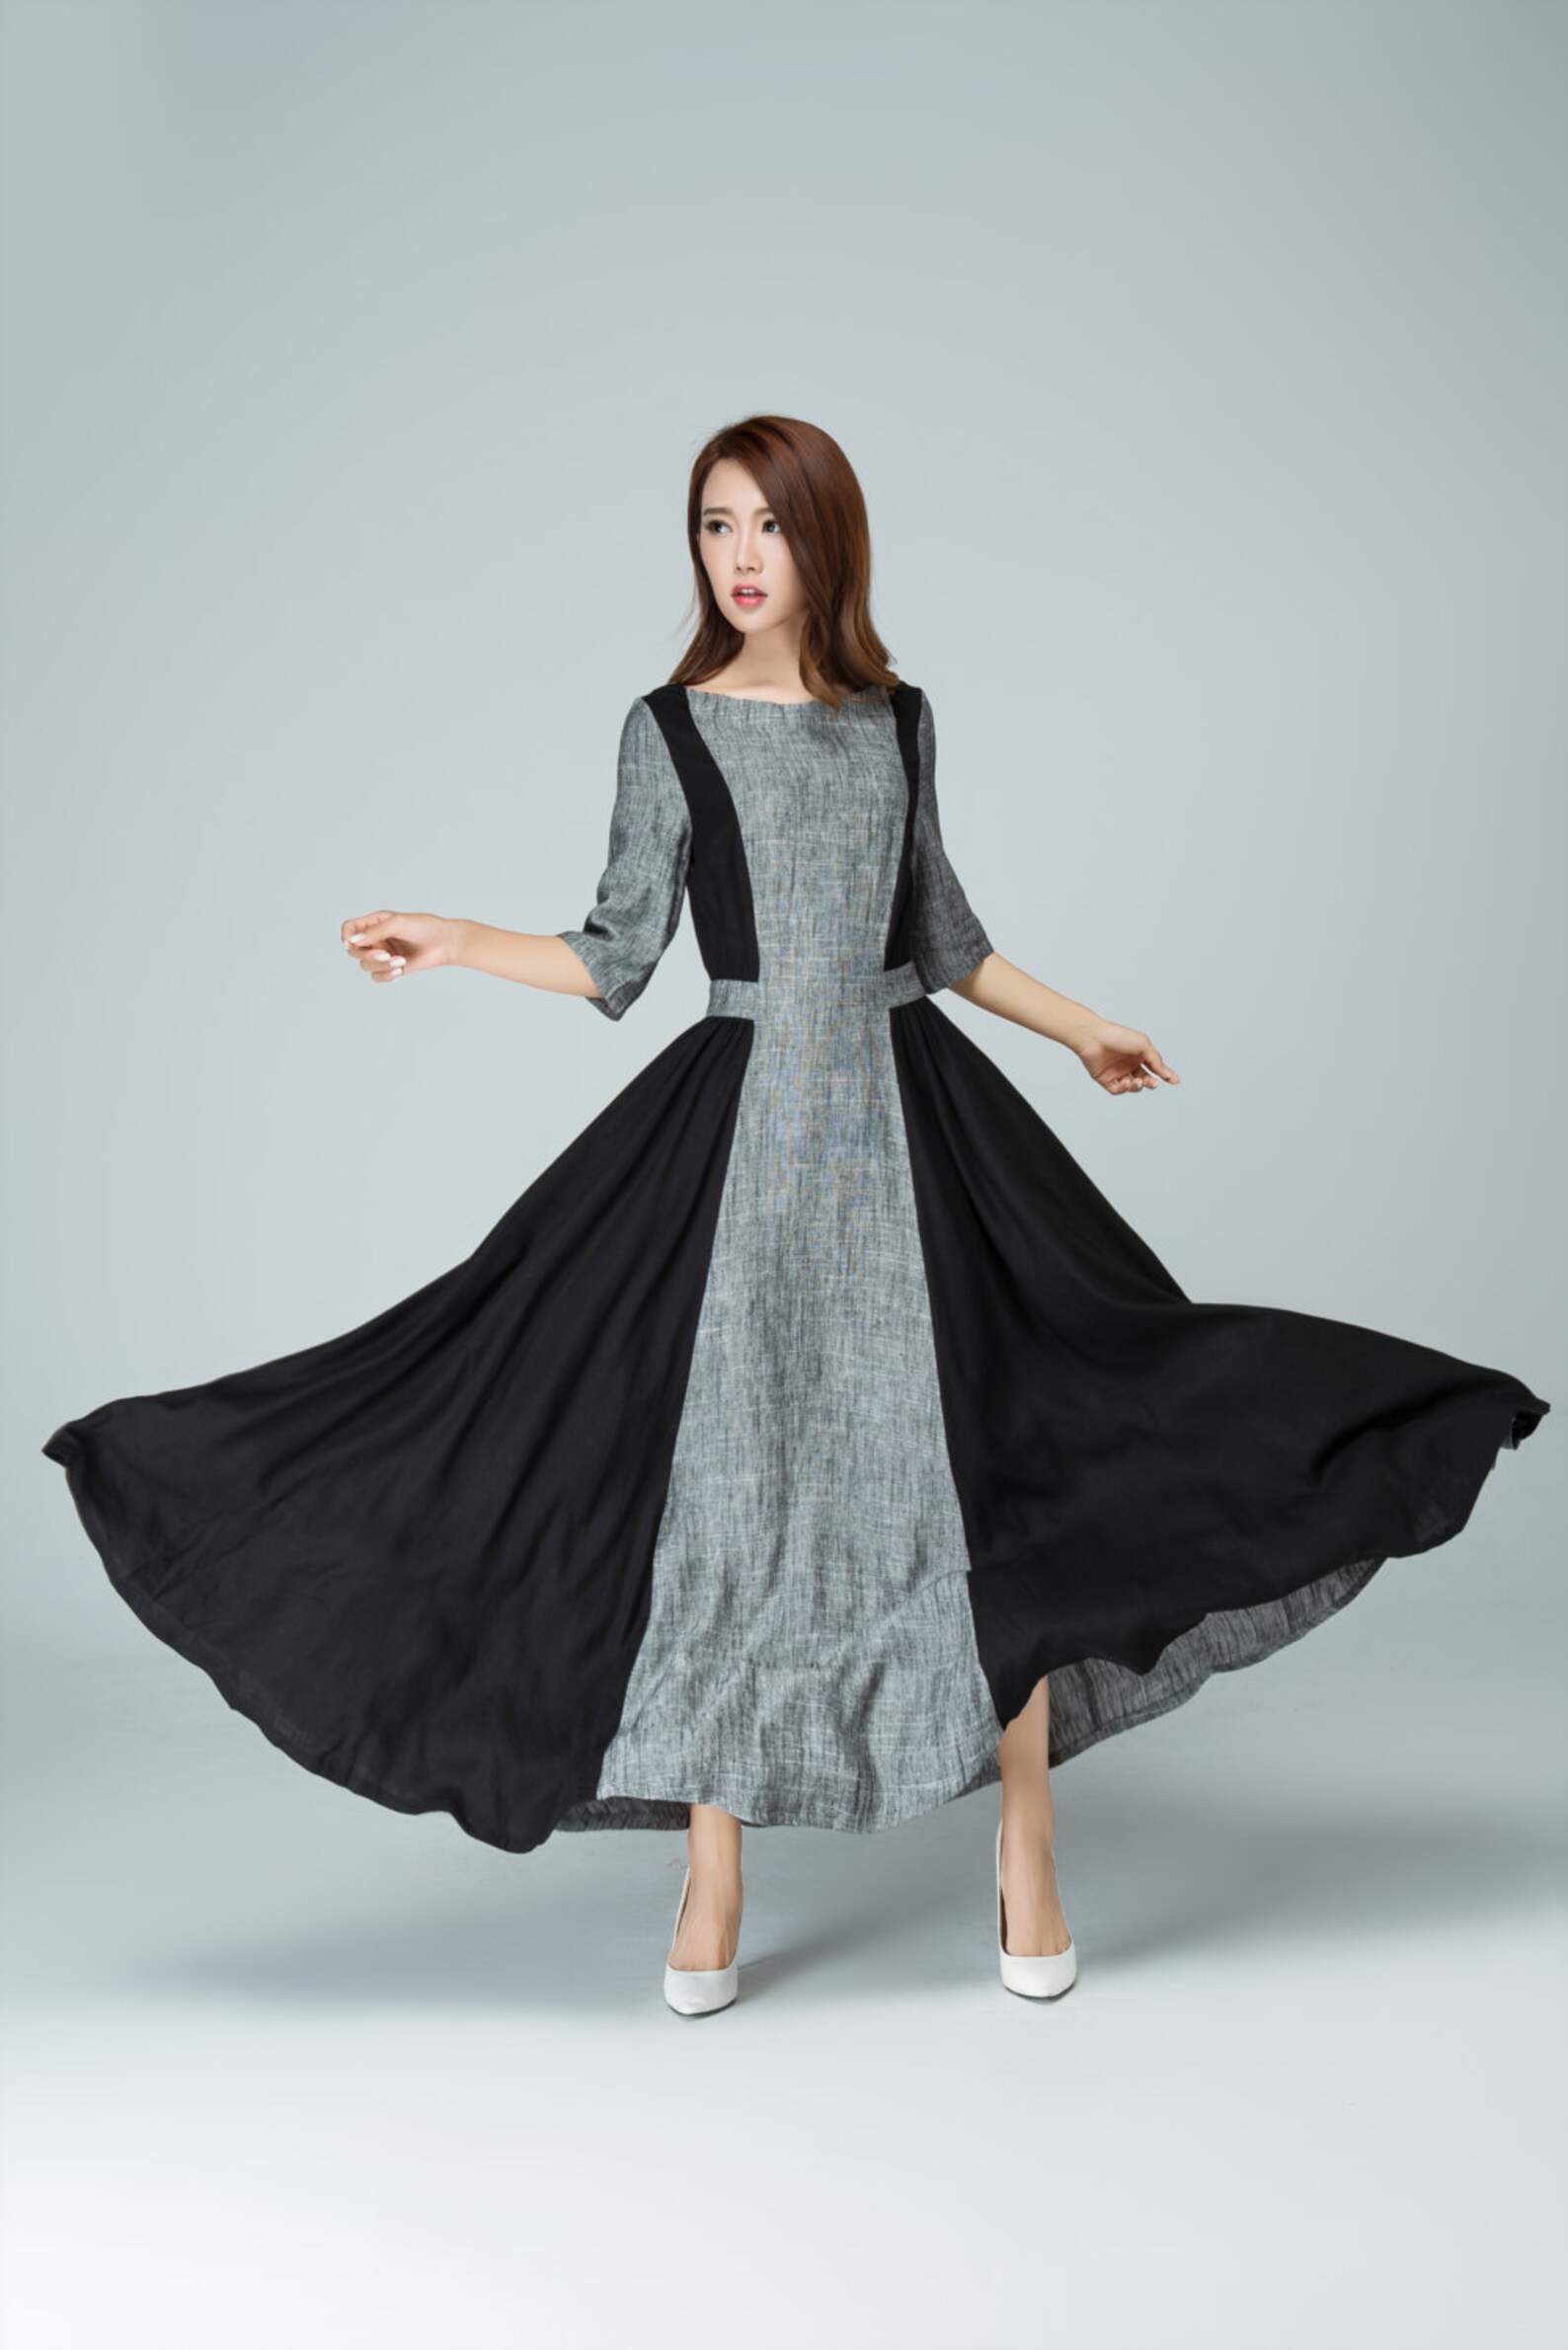 Long Linen Dress Linen Dress Prom Maxi Dress Linen Summer - Etsy